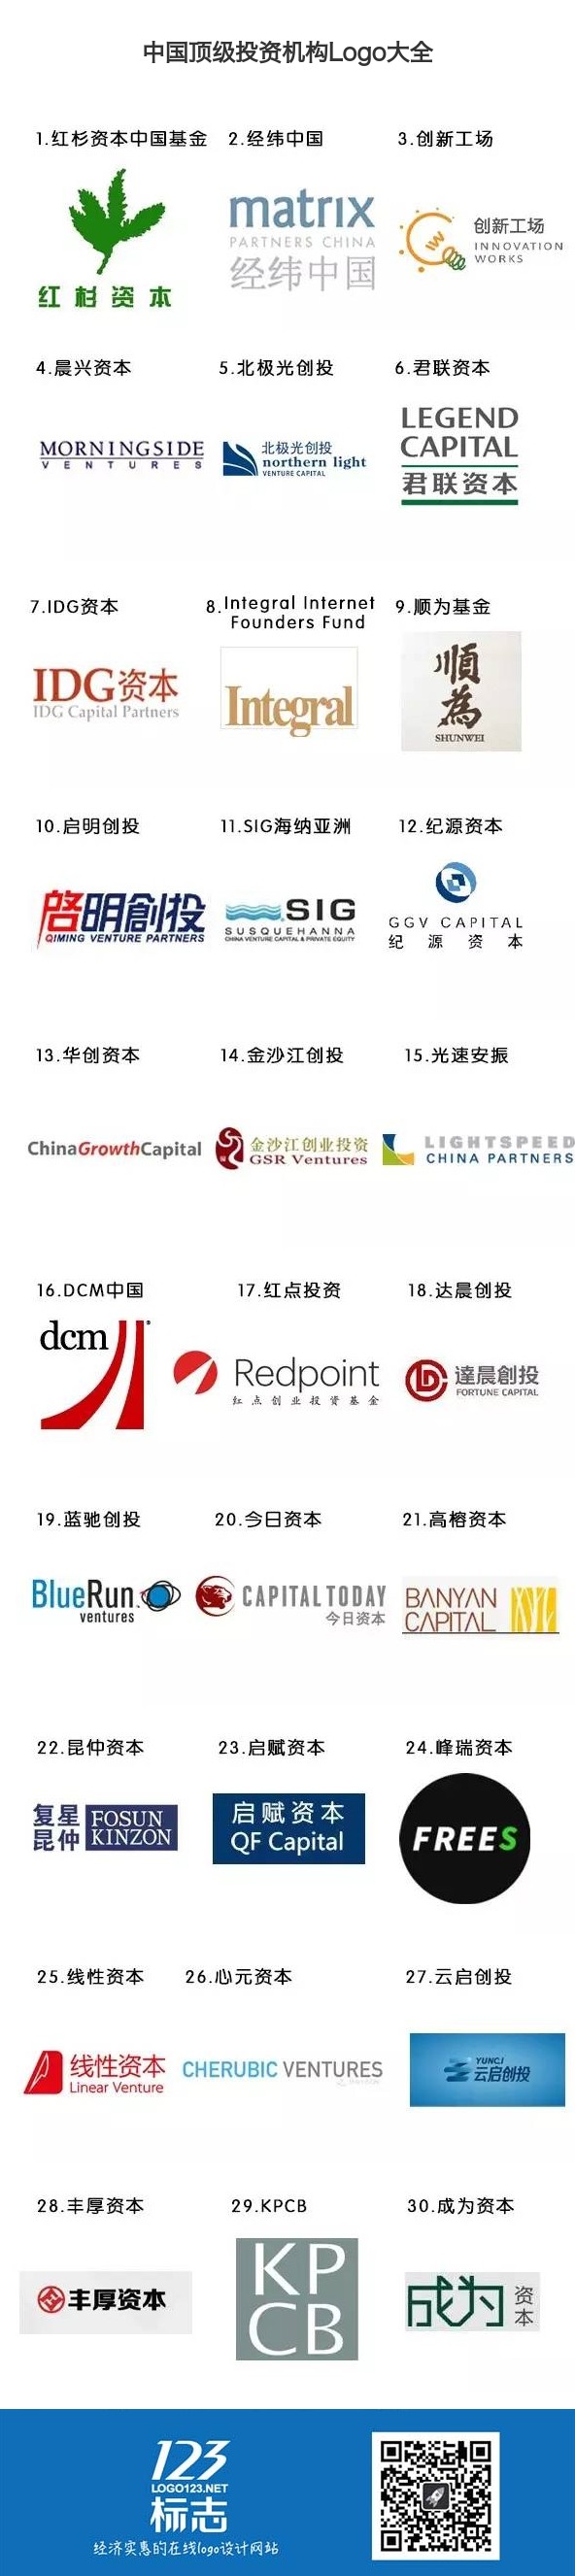 中国顶级投资机构Logo大全